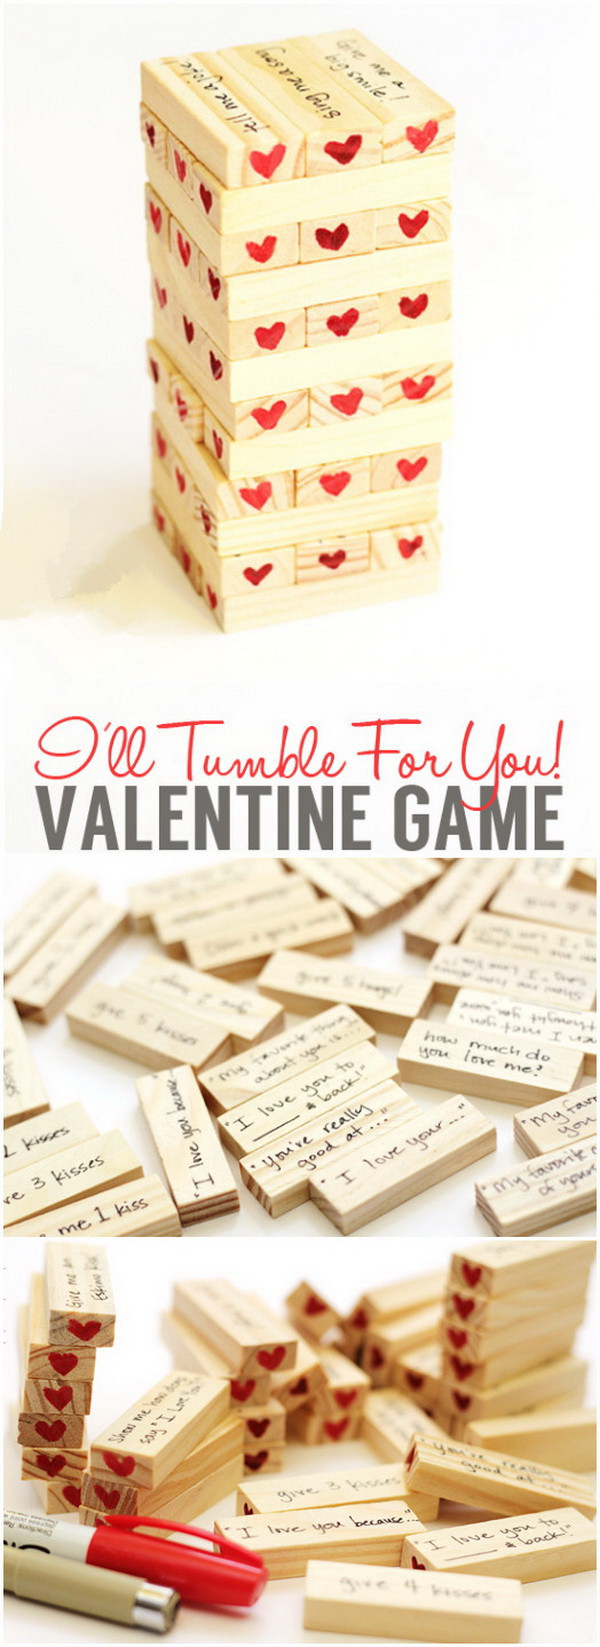 Valentine Day Gift Ideas For Boyfriends
 Easy DIY Valentine s Day Gifts for Boyfriend Listing More